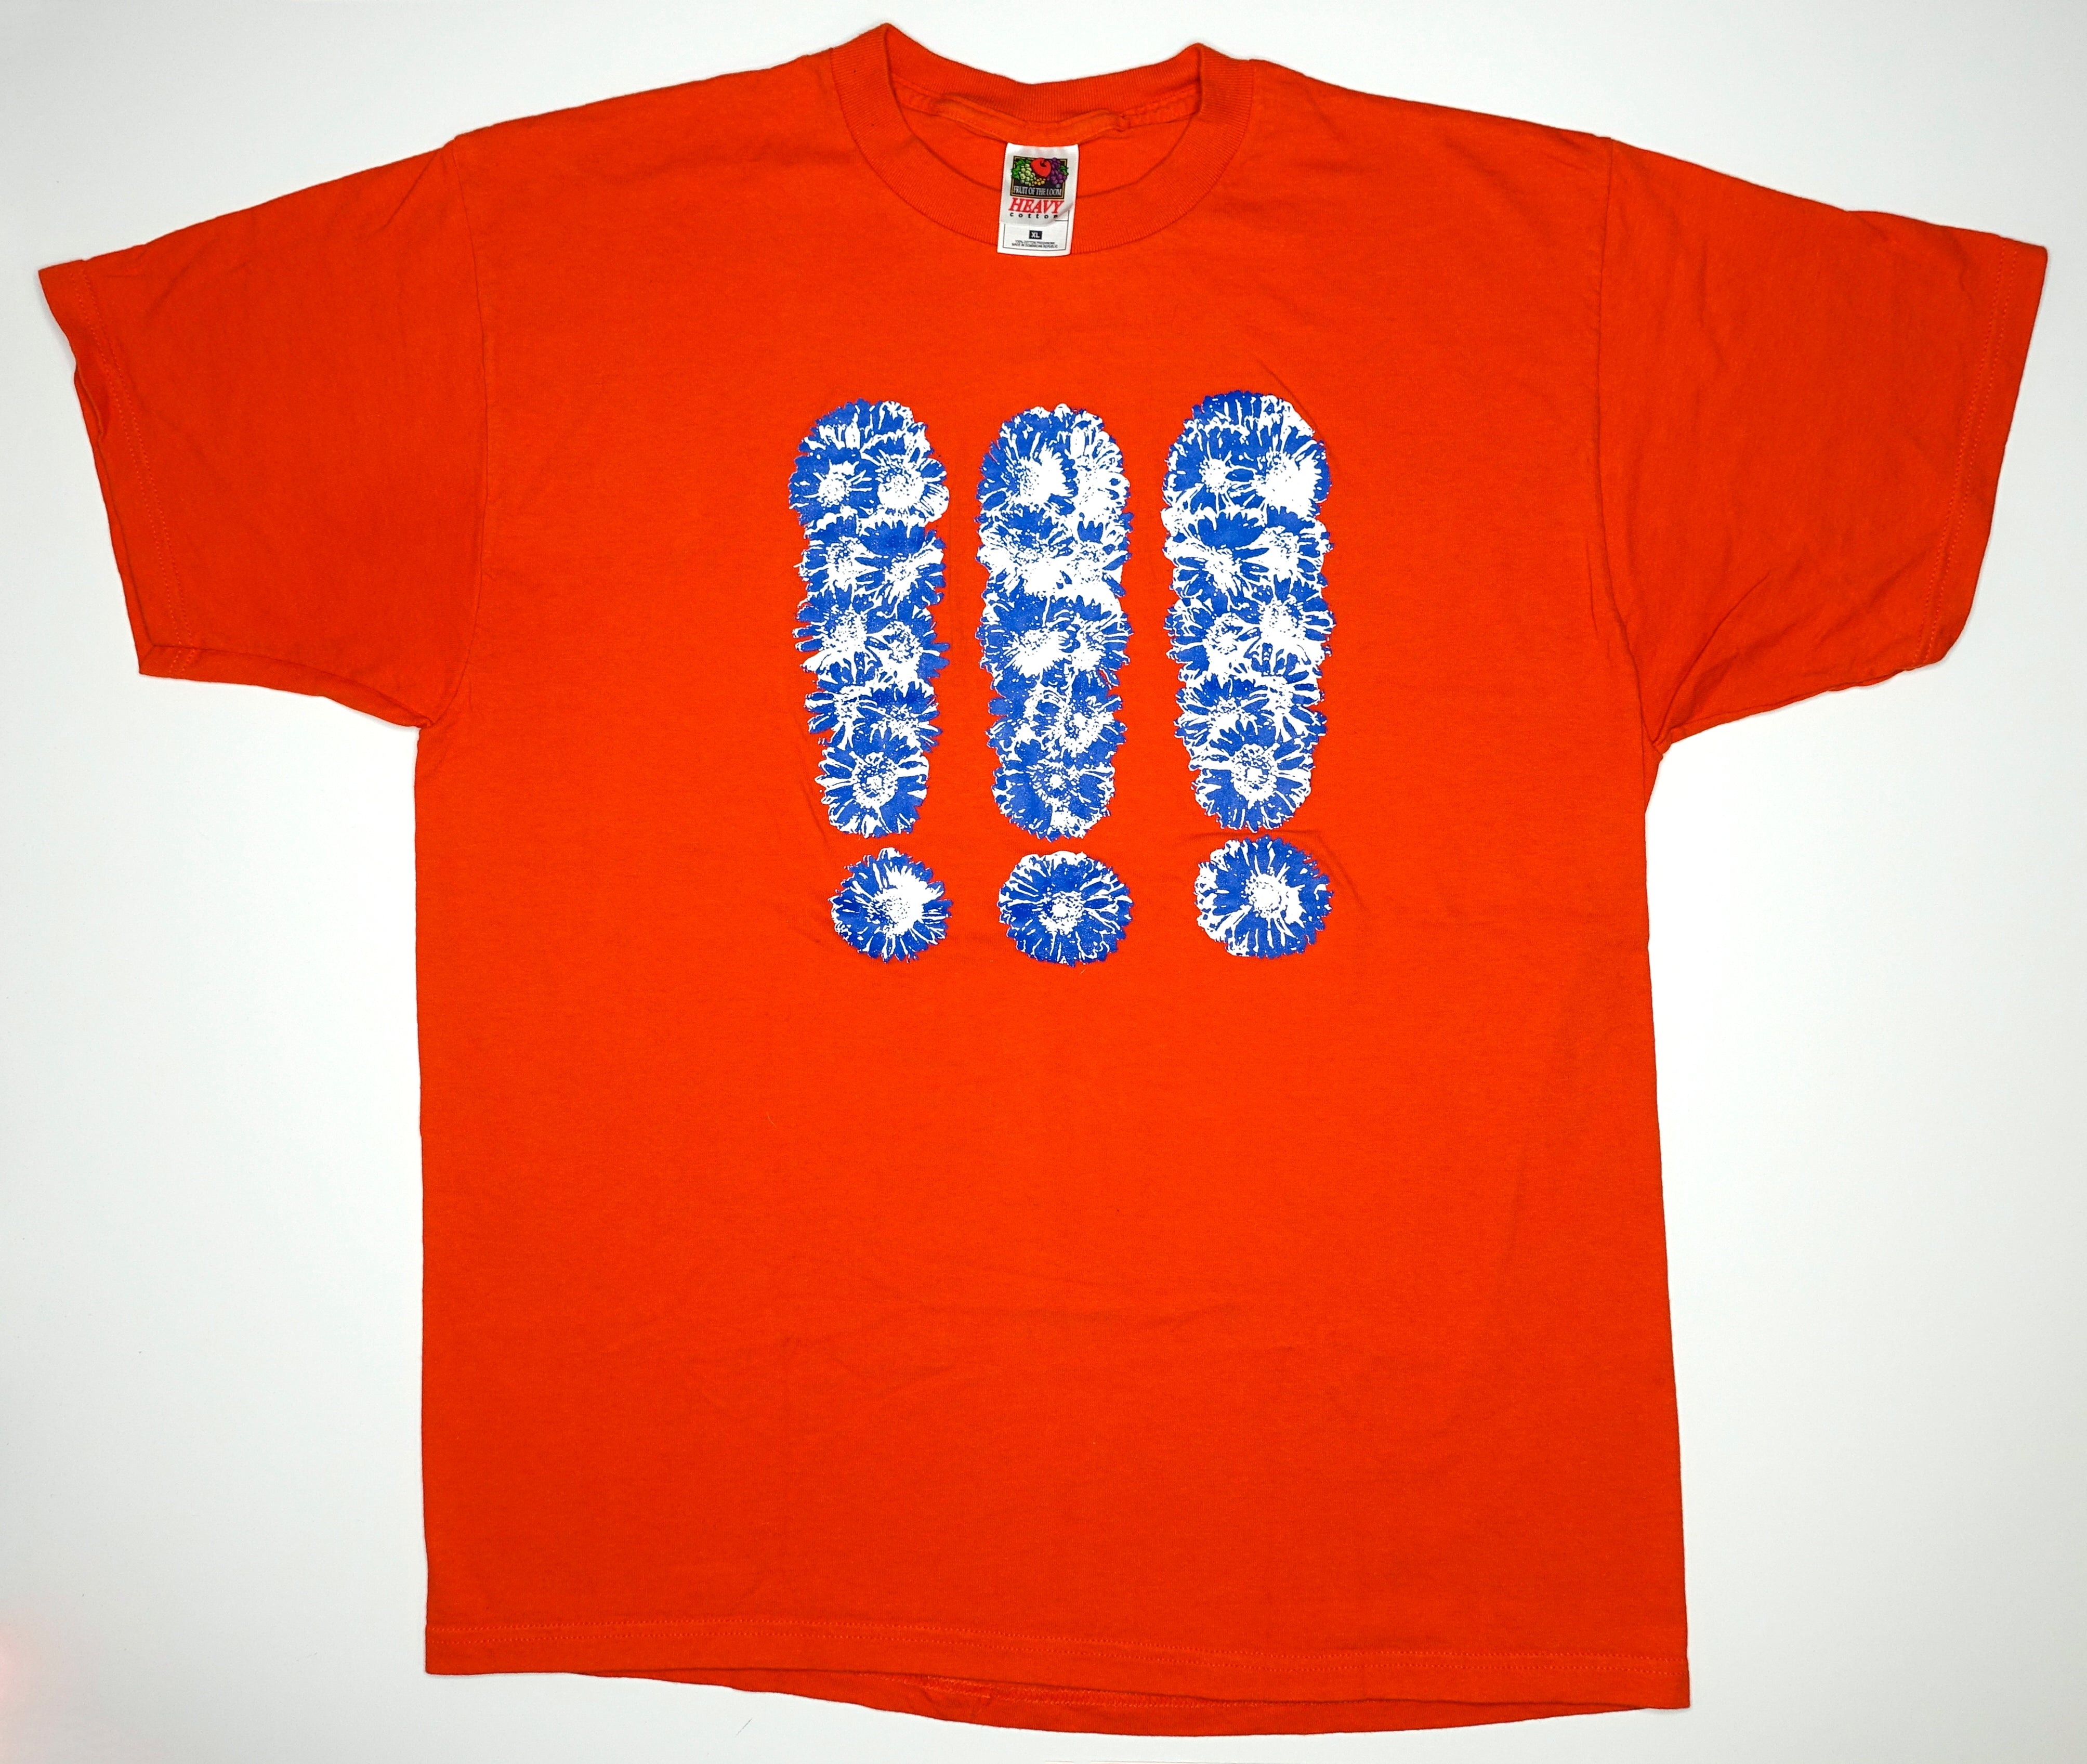 !!! (Chk Chk Chk) - !!! / Self Titled 2000 Tour Shirt Size XL (Orange)